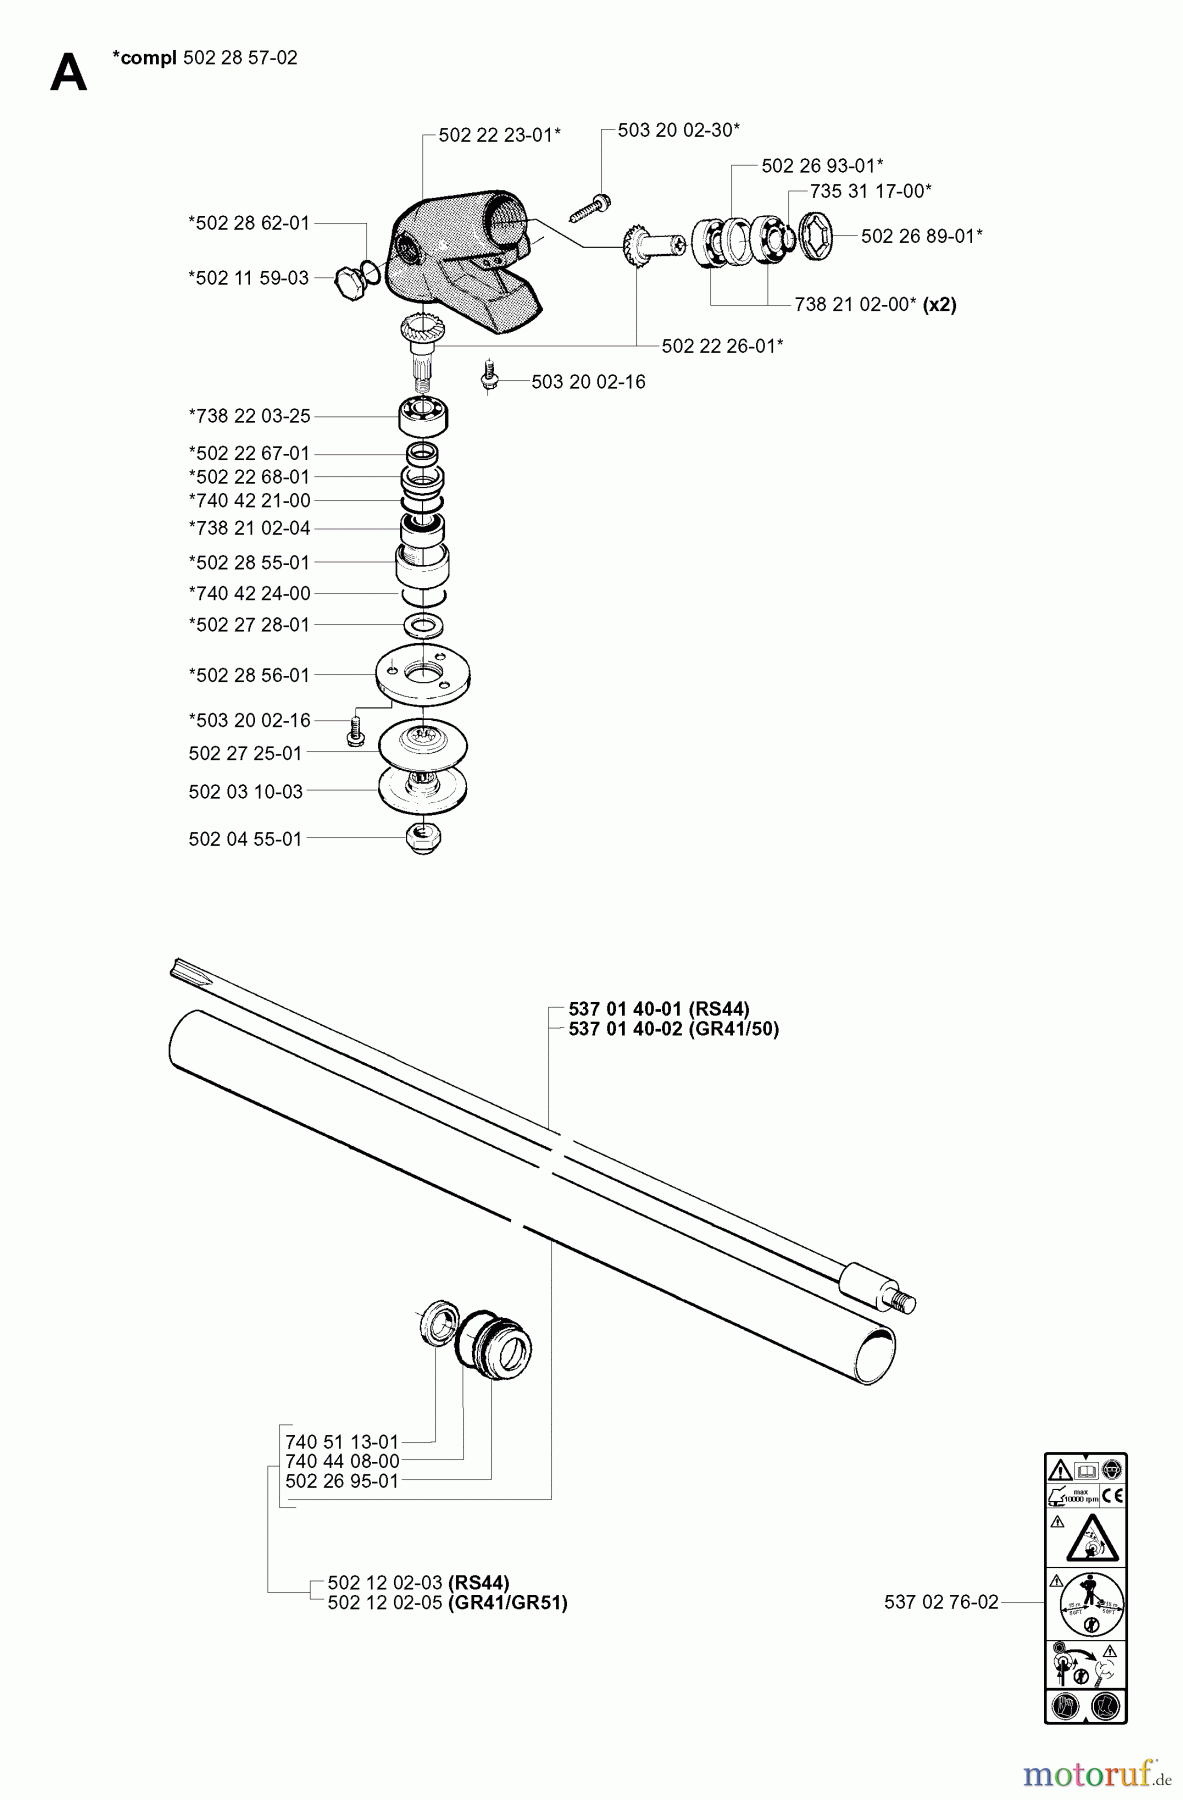  Jonsered Motorsensen, Trimmer RS44 - Jonsered String/Brush Trimmer (2001-03) BEVEL GEAR SHAFT